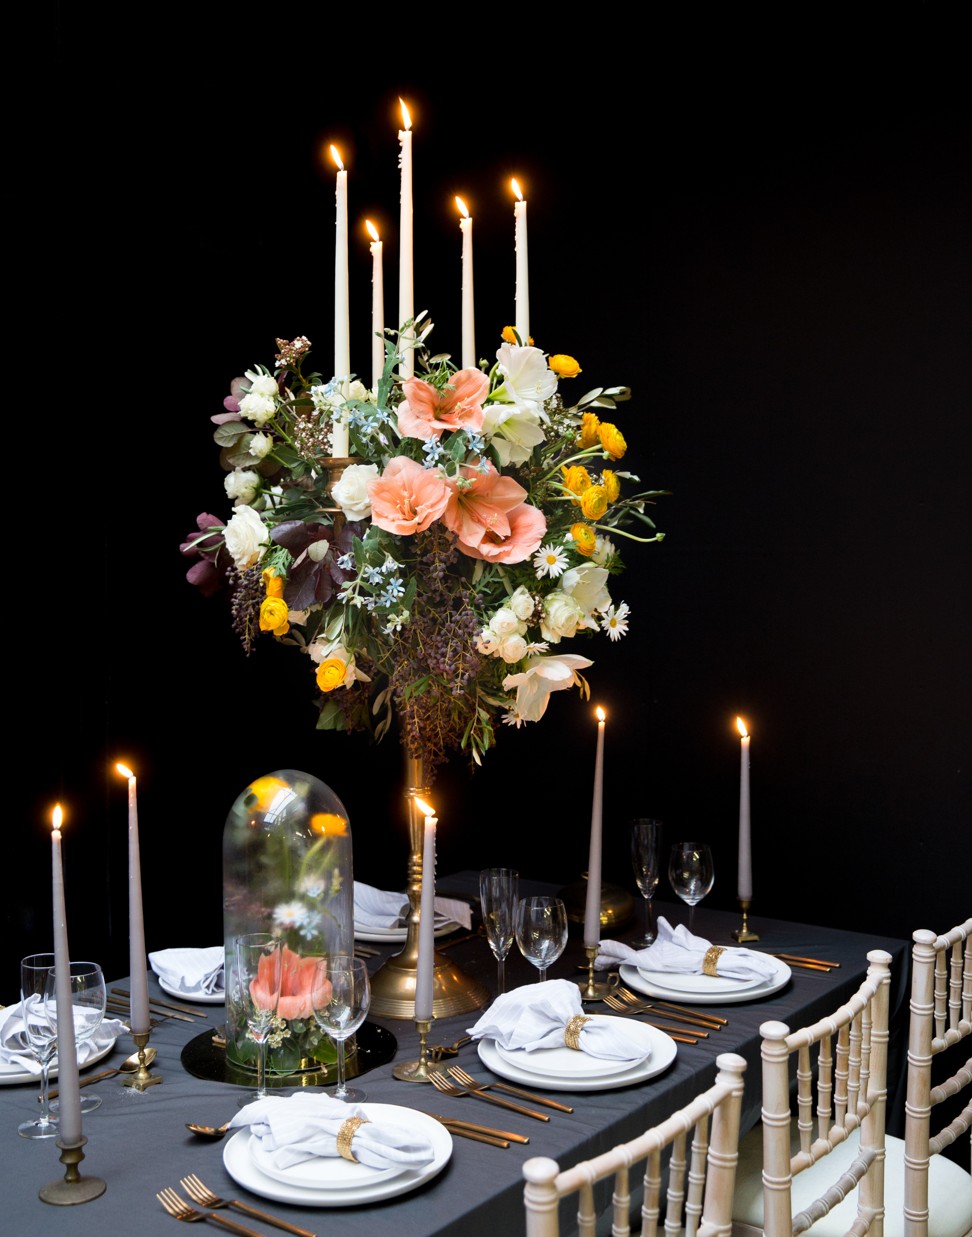 A table arrangement at the London Flower School. Picture: Marcelo Deguchi